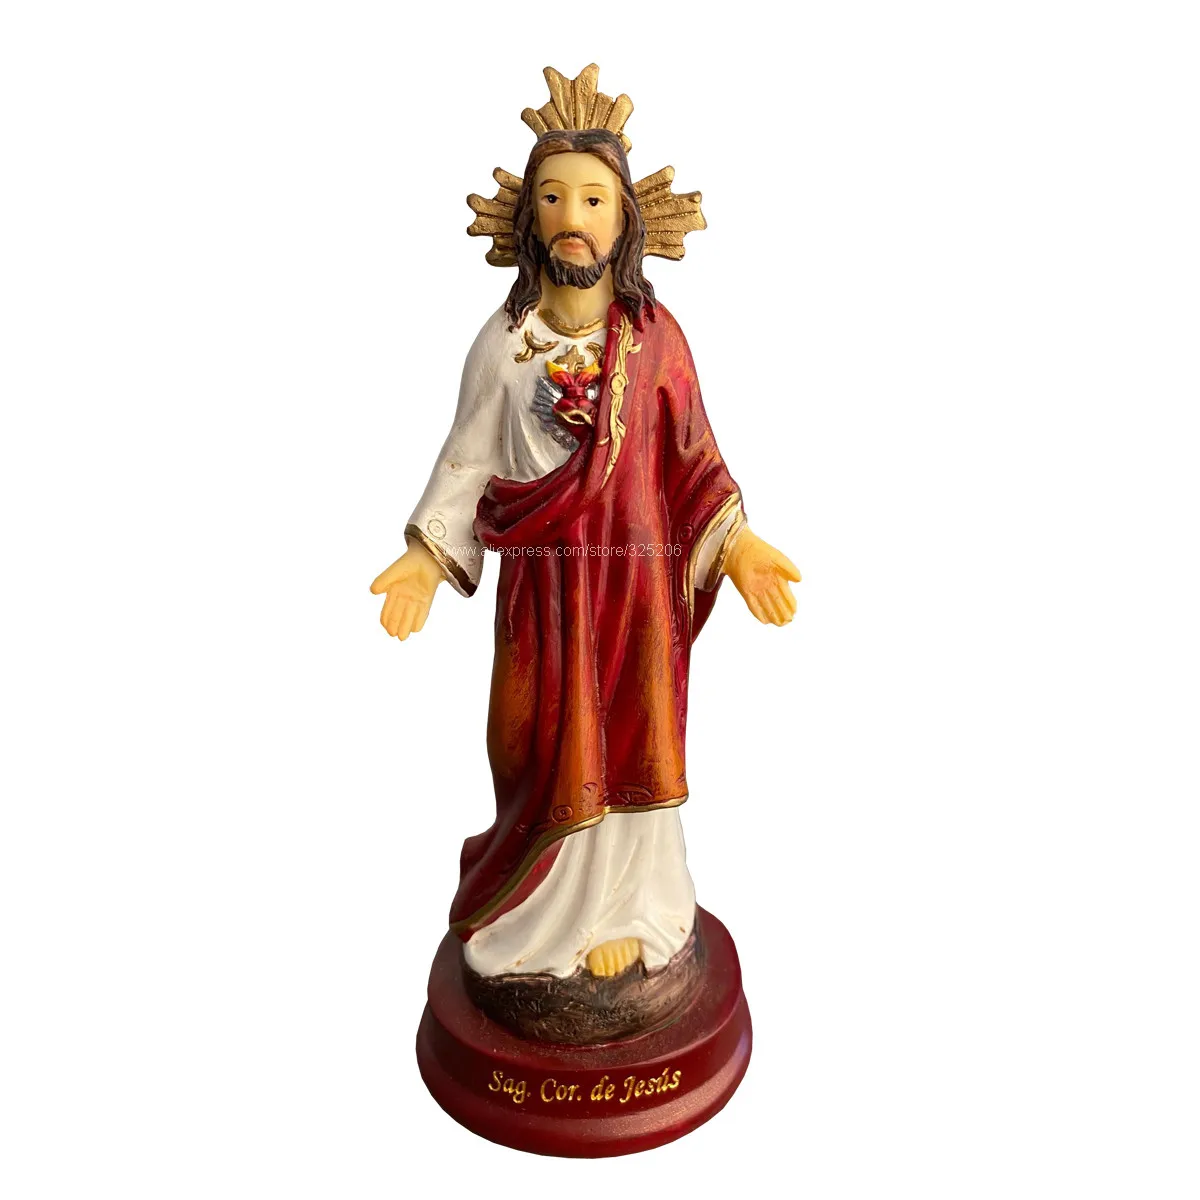 

Статуя Скульптуры Святой фигурки с Христом и Иисусом